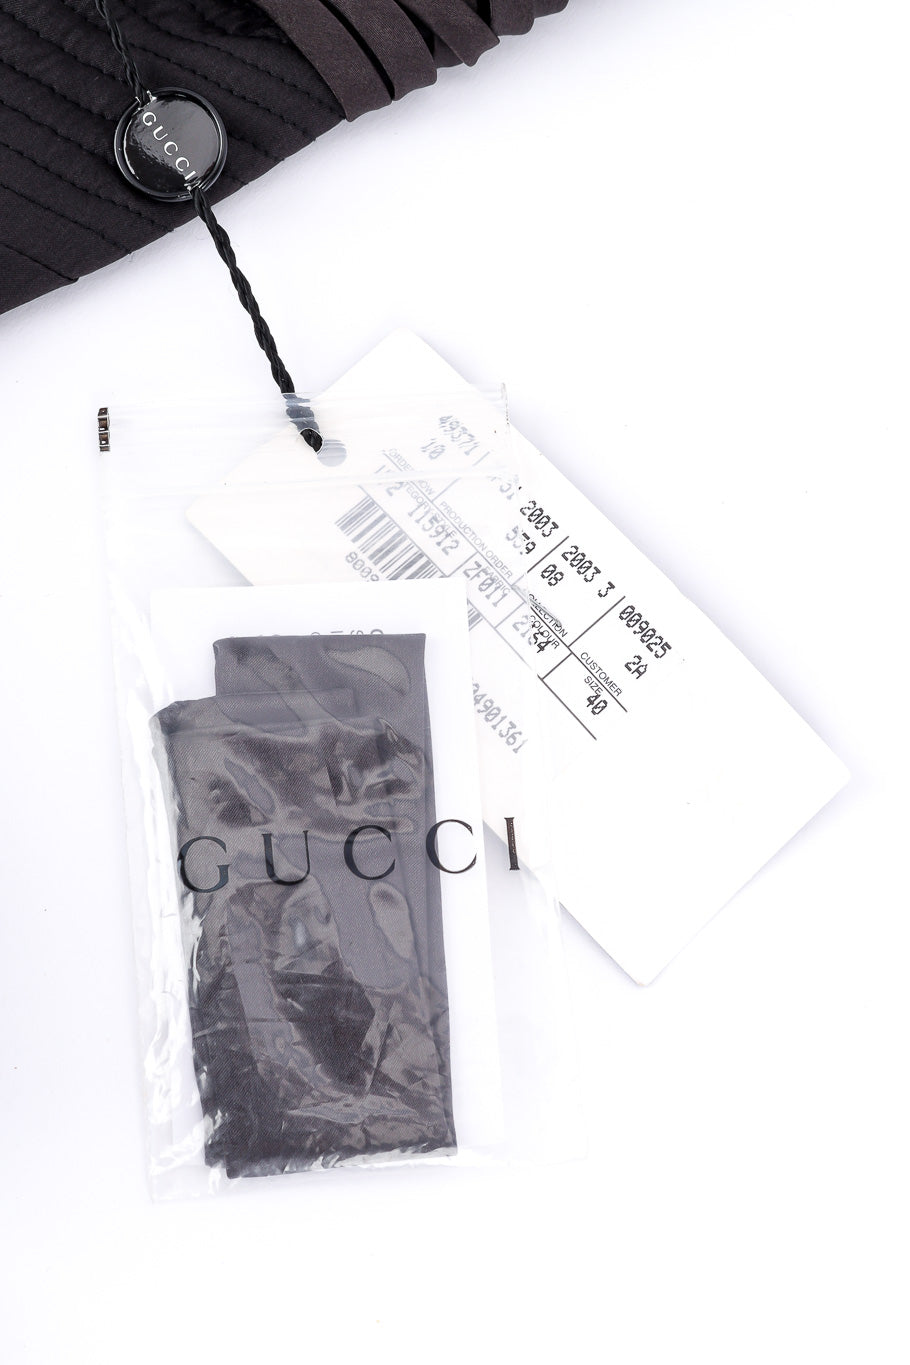 Gucci 2003 F/W Silk Corset Dress original tags closeup @Recessla